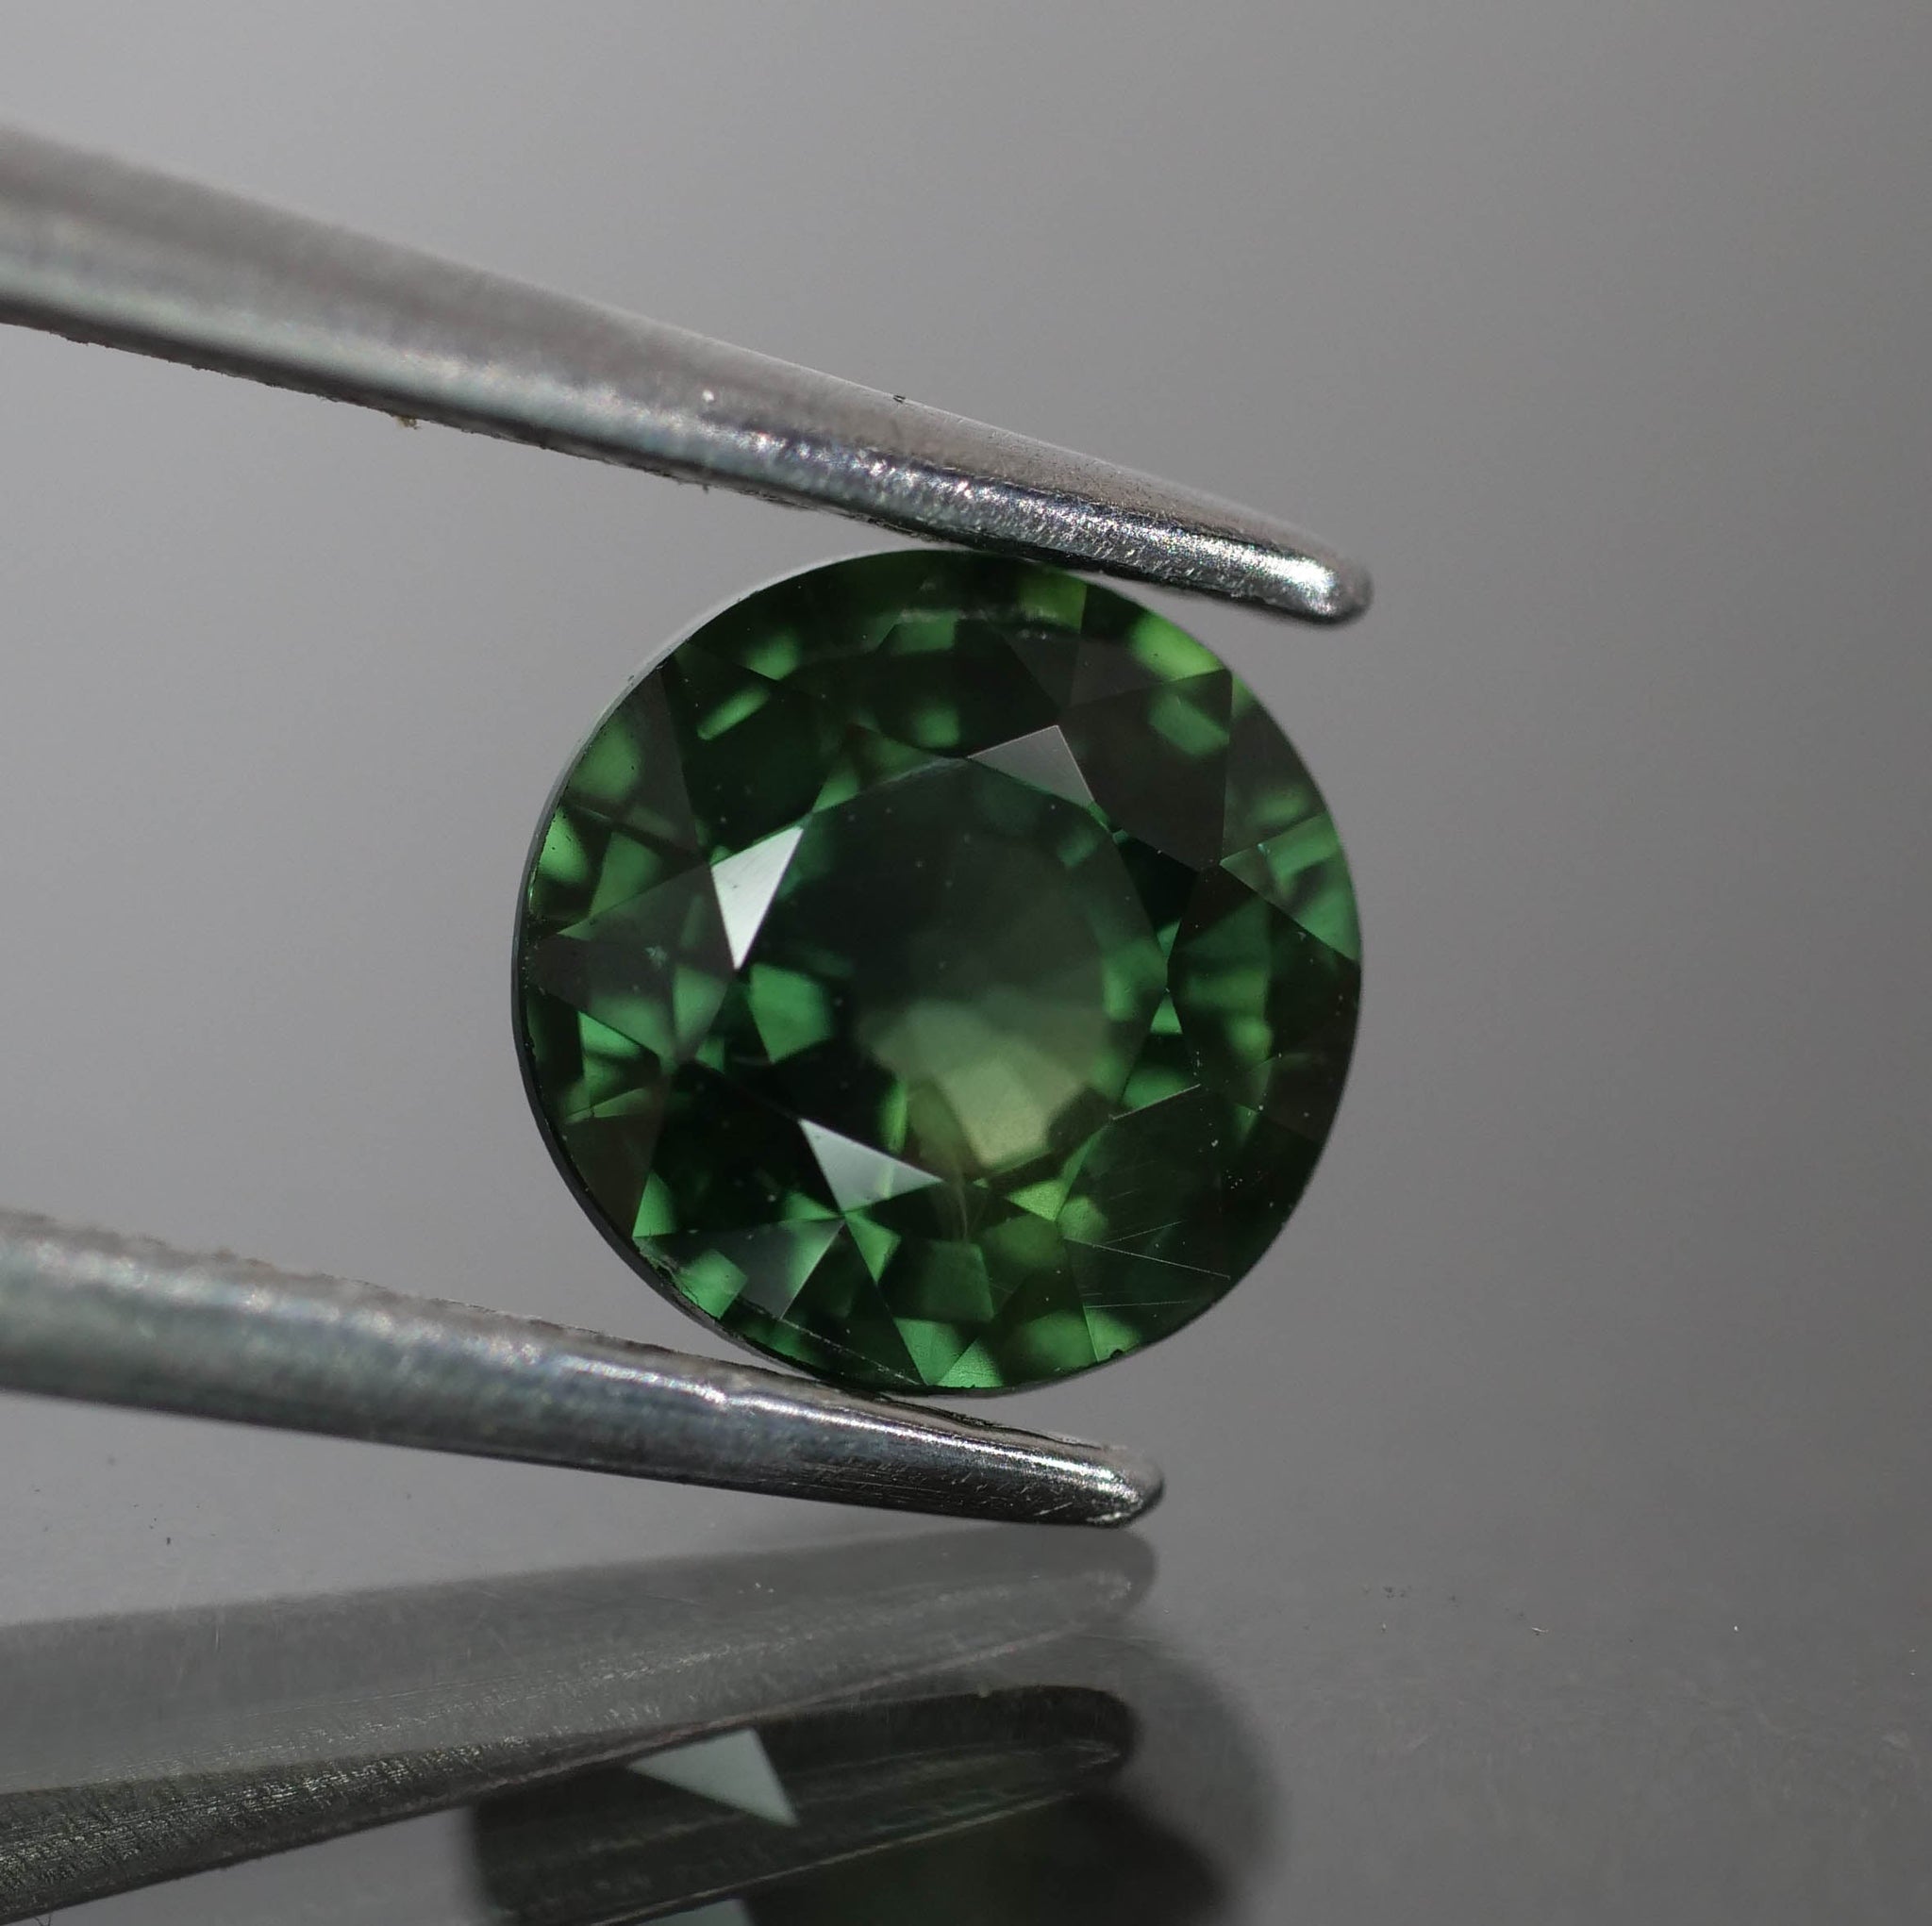 Sapphire | natural, deep green, round cut 6mm, 1 ct, Thailand - Eden Garden Jewelry™